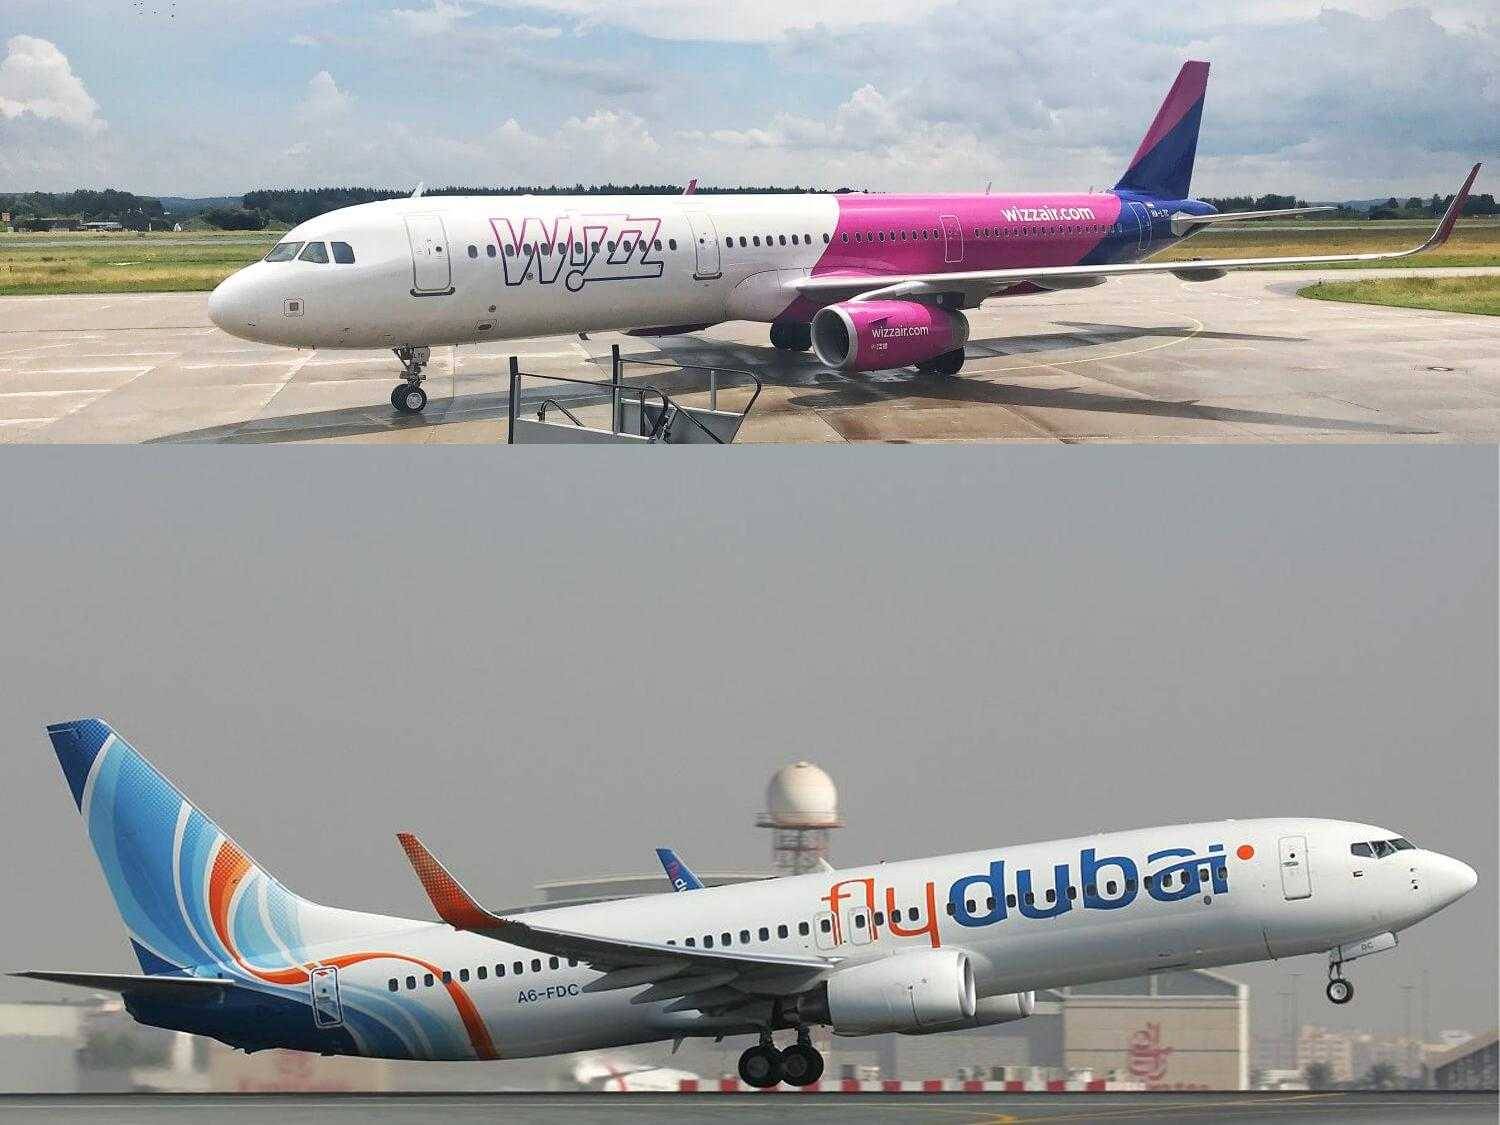 Flydubai (флайдубай): описание авиакомпании, преимущества и недостатки дубайских авиалиний, отзывы пассажиров